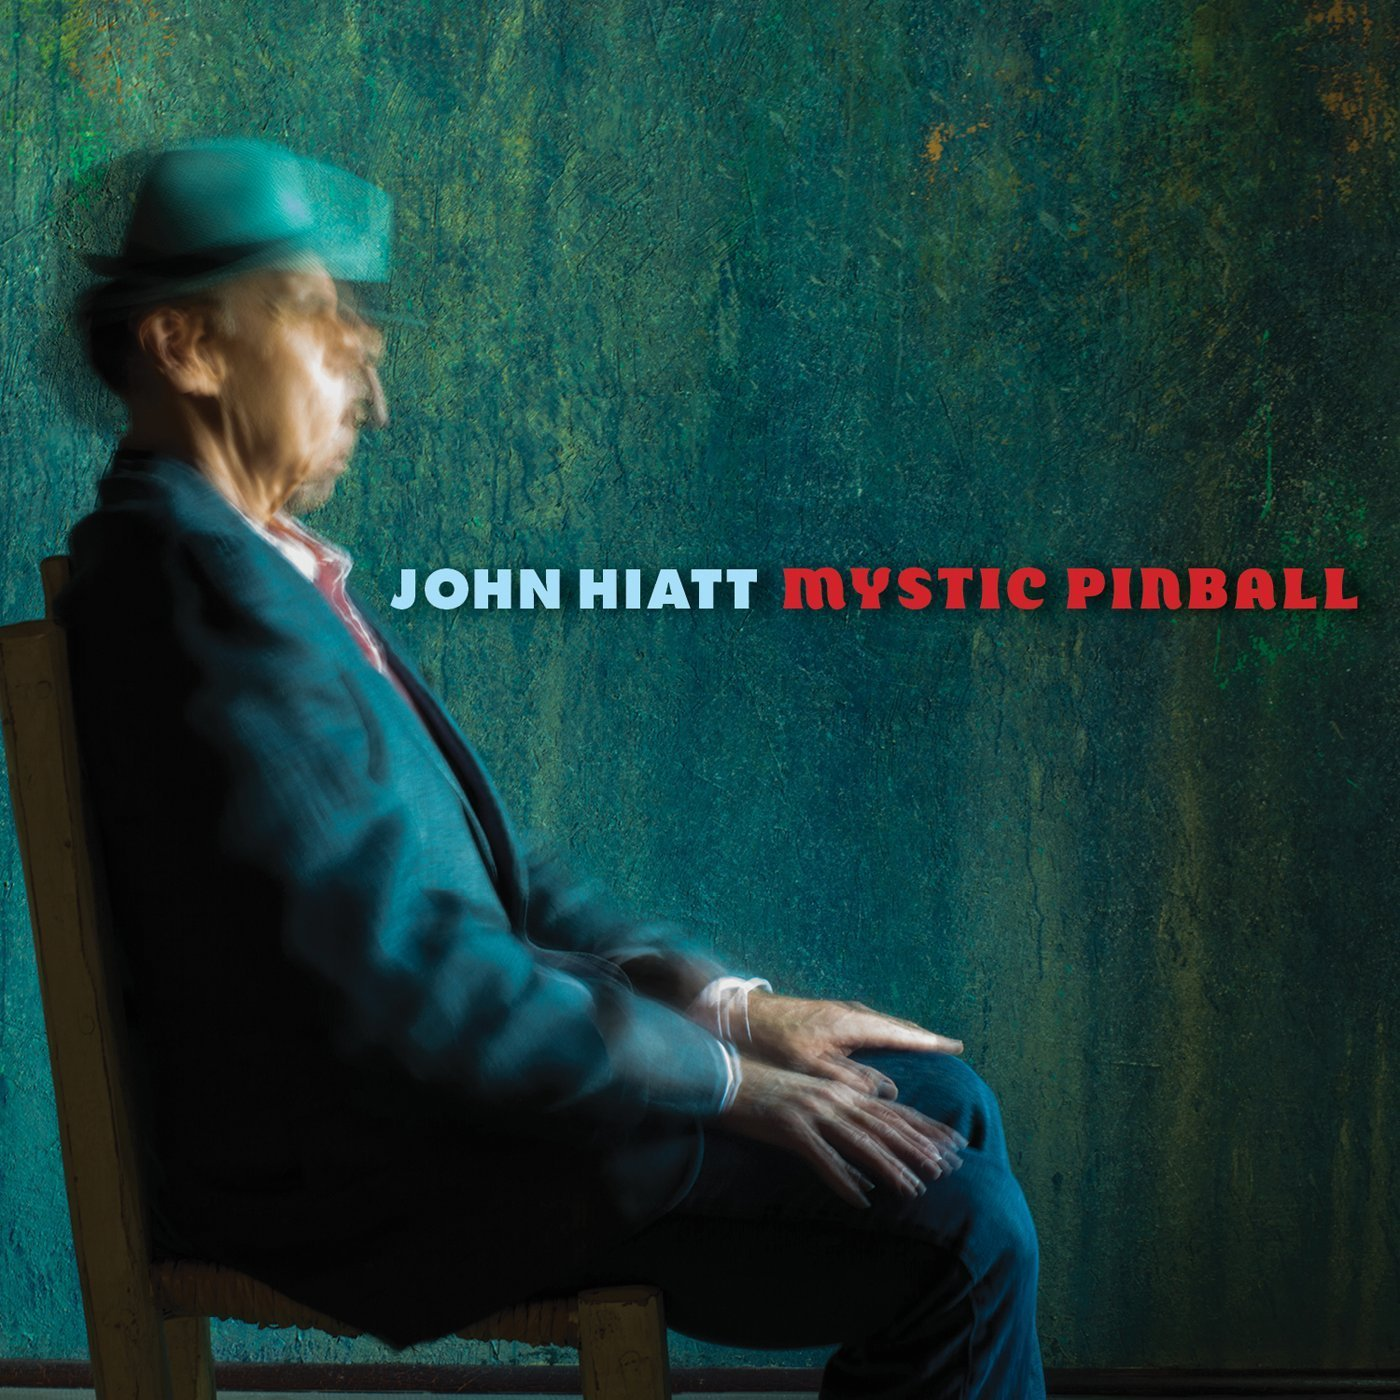 John Hiatt - - Pinball Mystic (Vinyl)